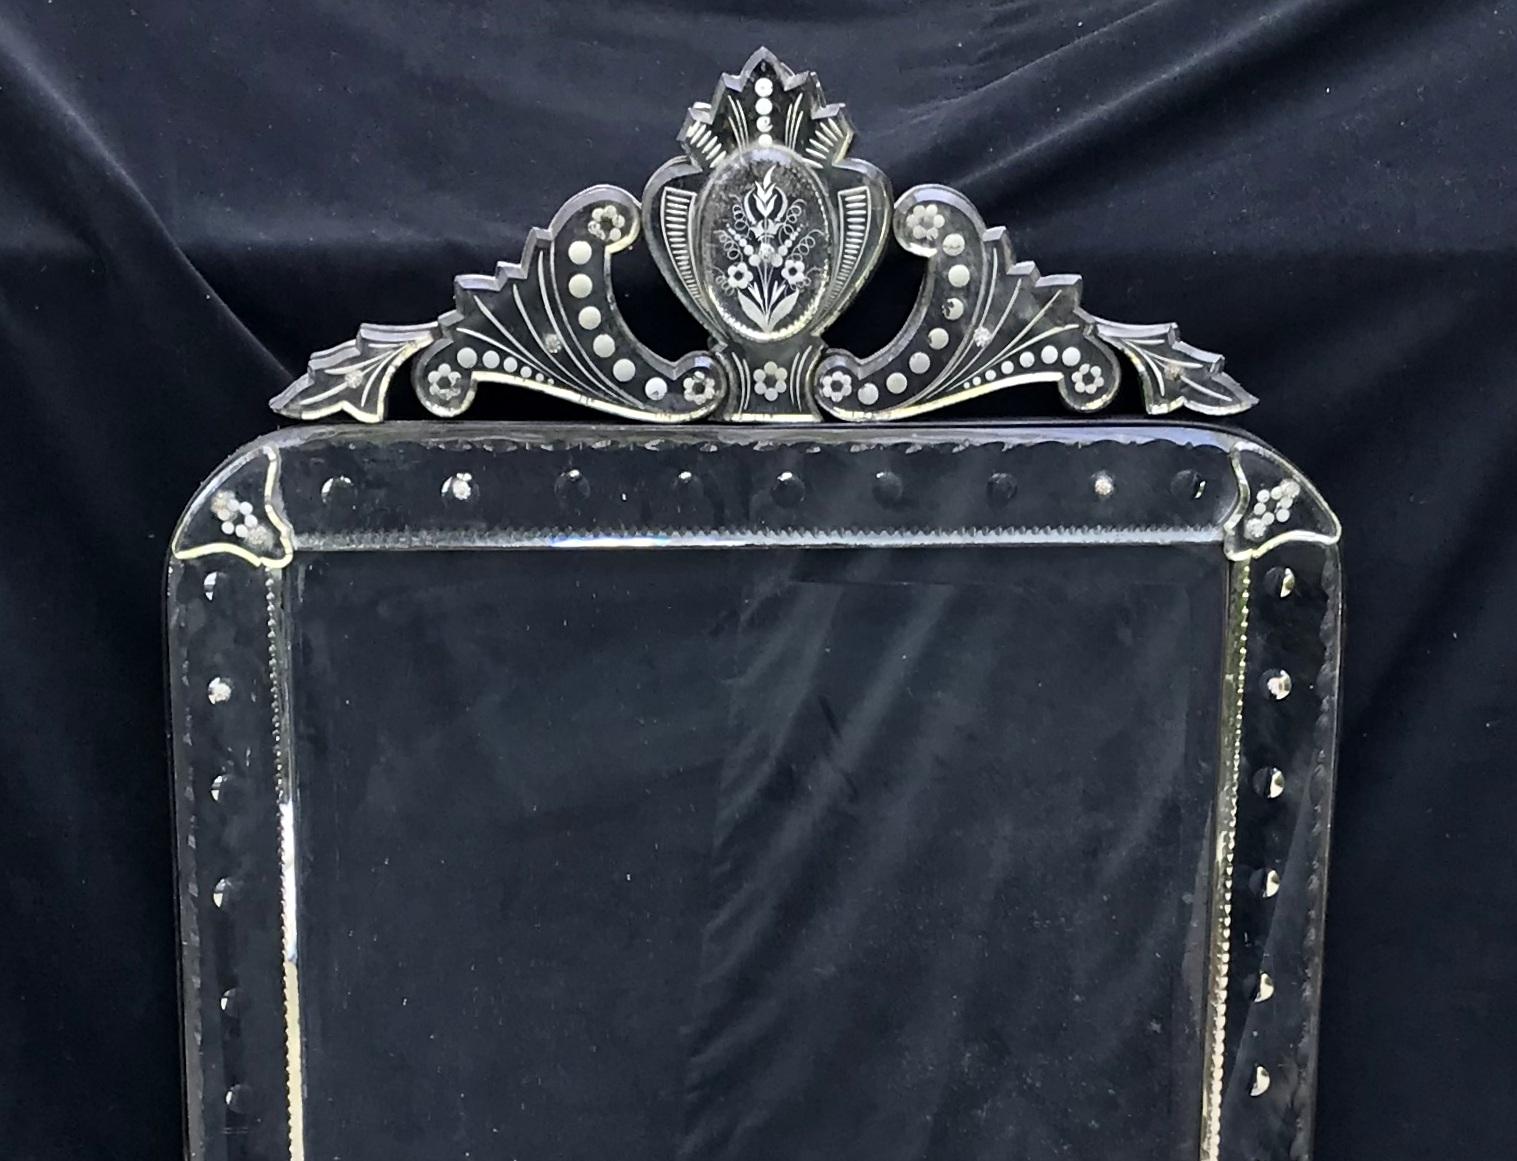 Wunderschöner, achteckiger venezianischer Spiegel mit Krone. Der Spiegel hat feine geätzte Details auf der Oberseite und an den Seiten sowie eine Abschrägung. 
Die Abmessungen sind 63